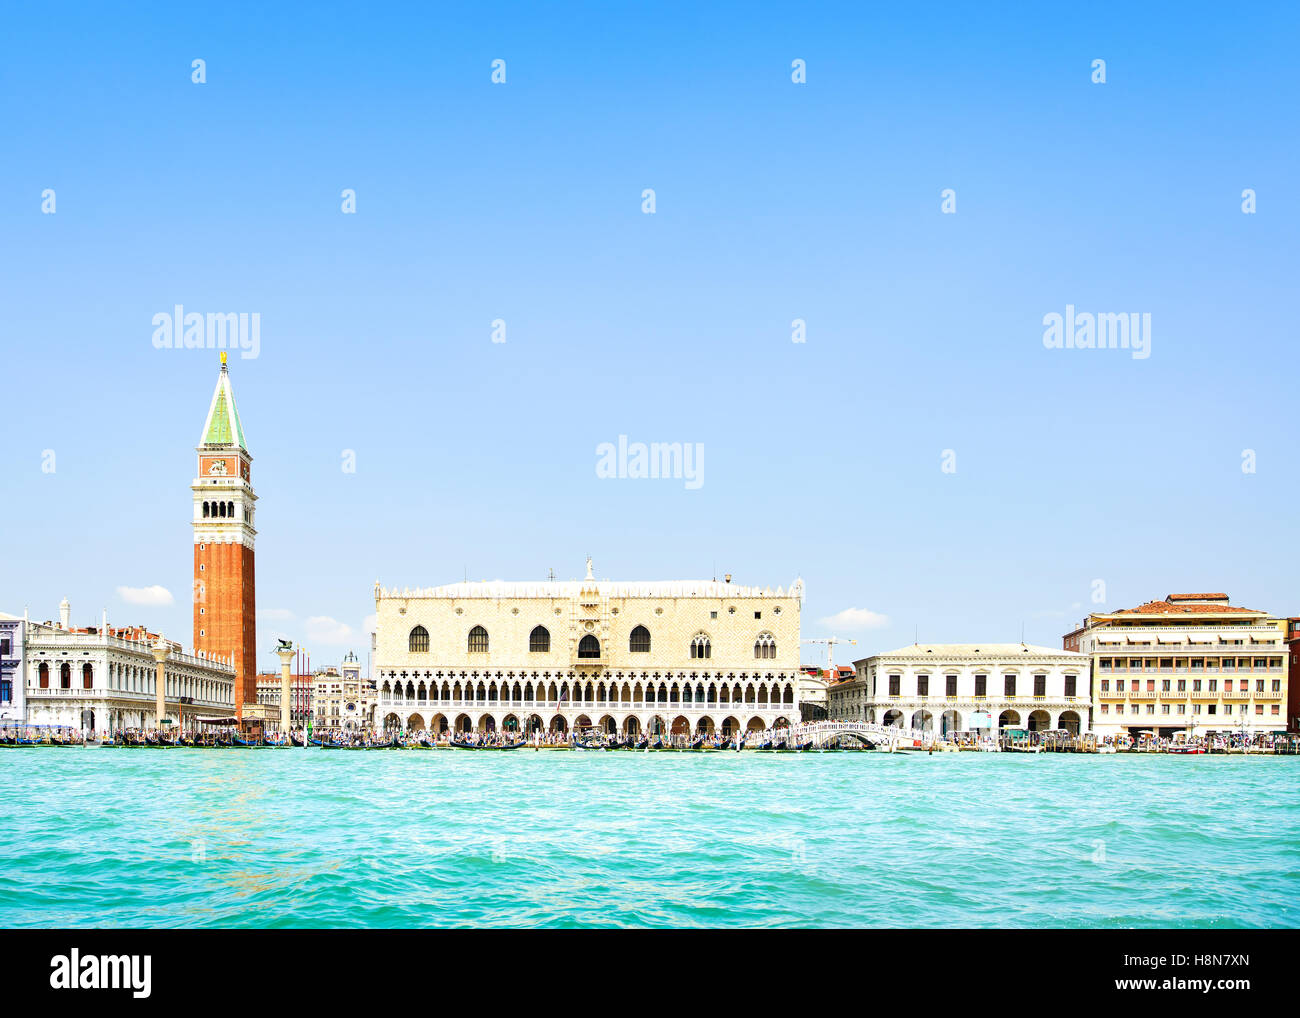 Vue de Venise, vue à partir de la mer de la Piazza San Marco ou Place St Marc, Le Campanile et le Palais des Doges ou Ducale. L'Italie, l'Europe. Banque D'Images